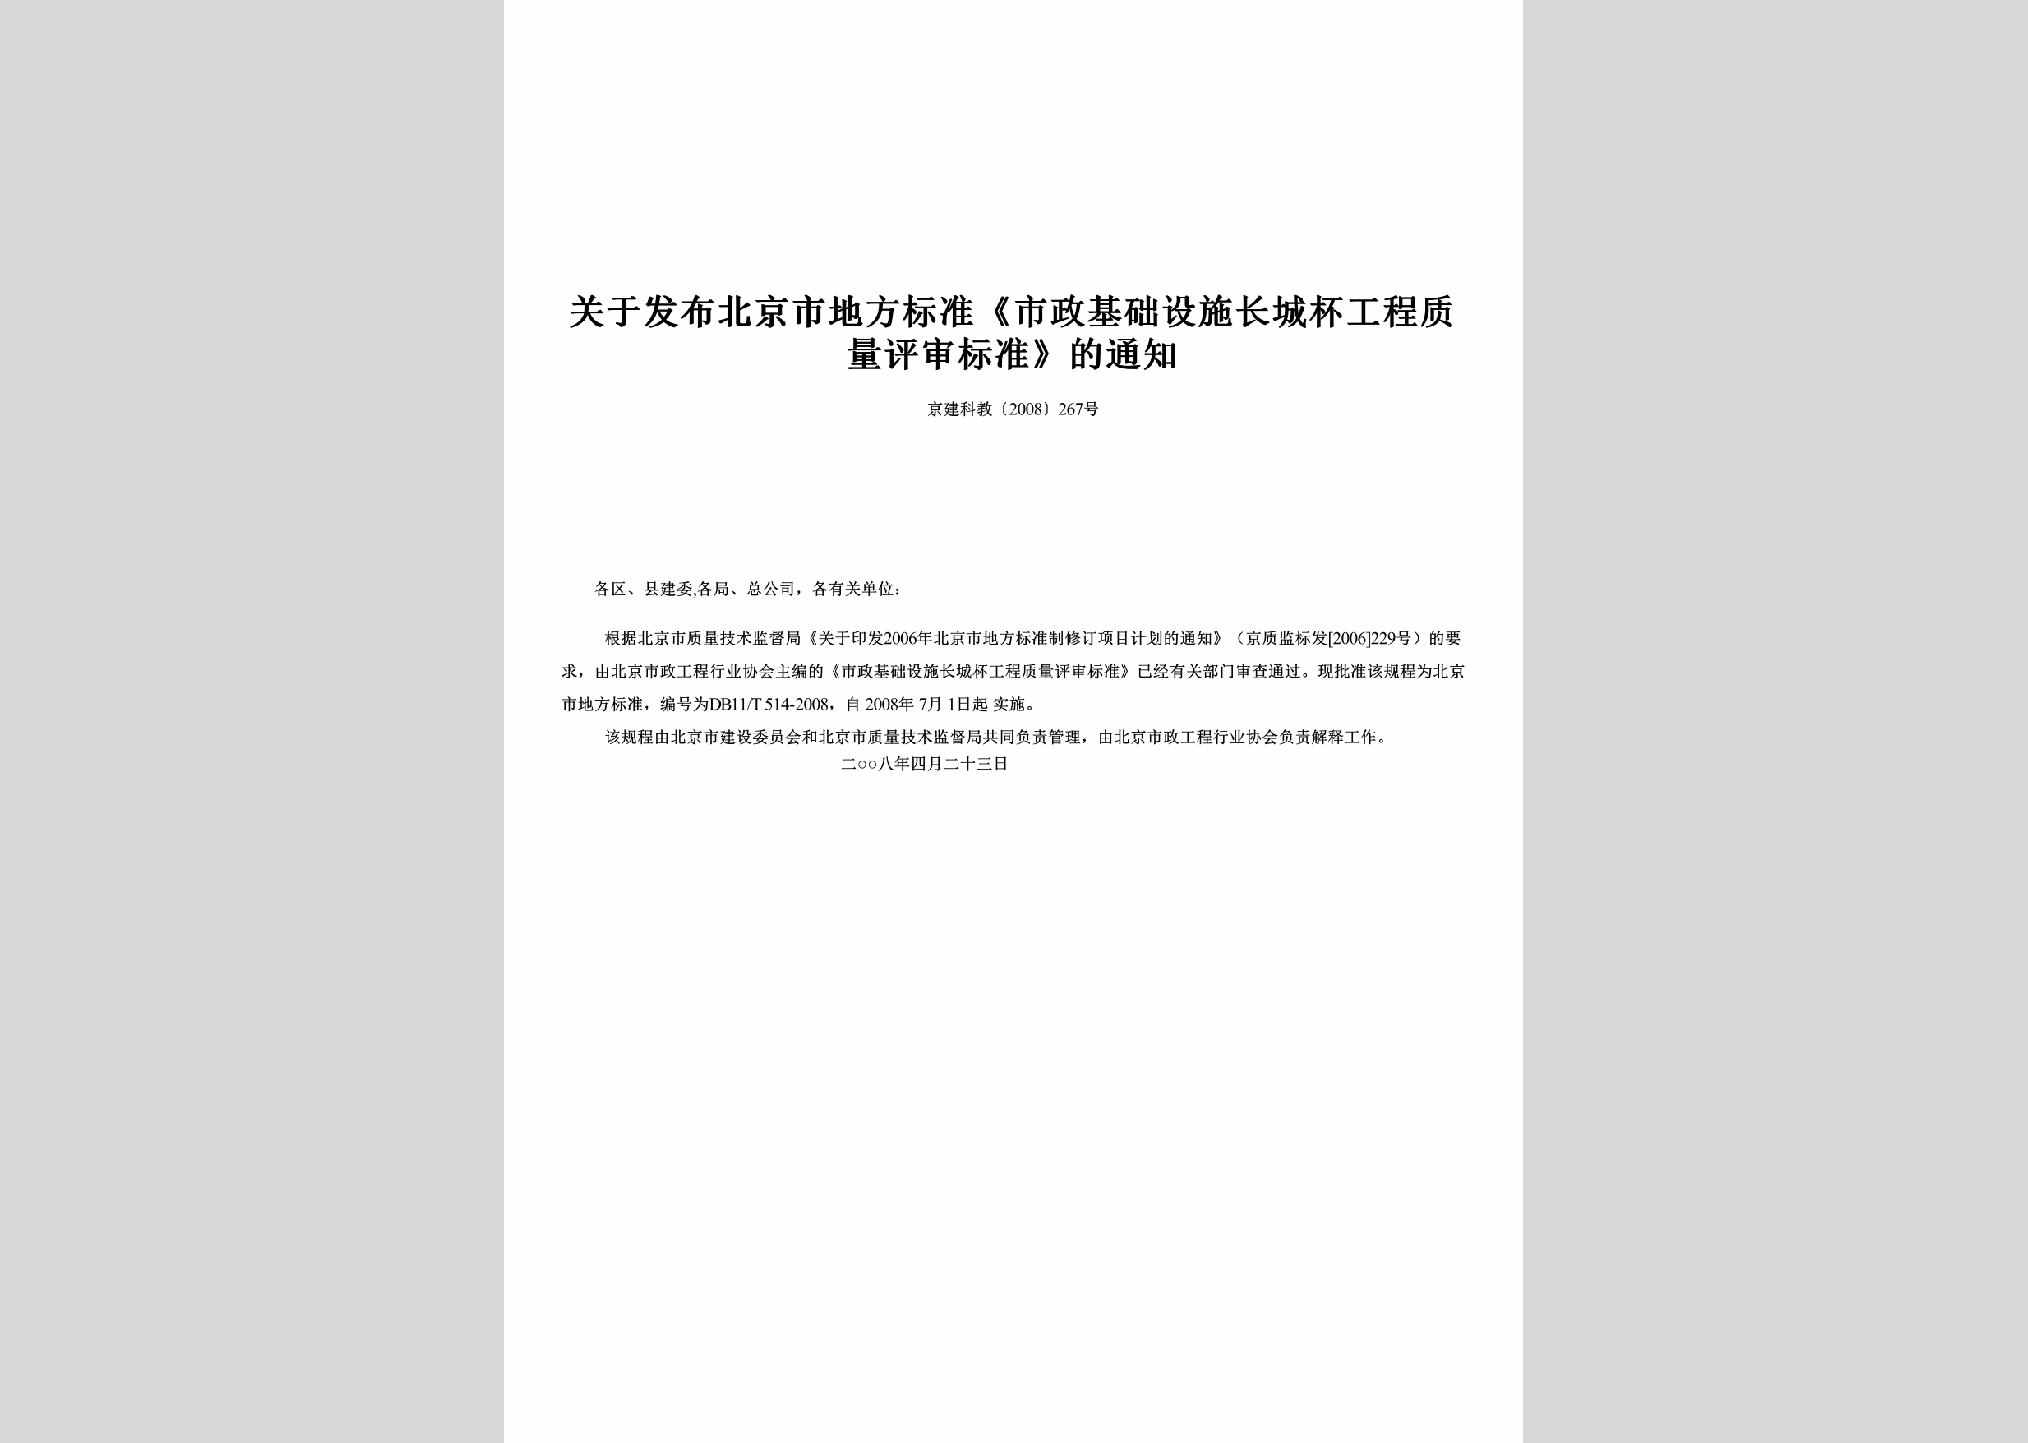 京建科教[2008]267号：关于发布北京市地方标准《市政基础设施长城杯工程质量评审标准》的通知